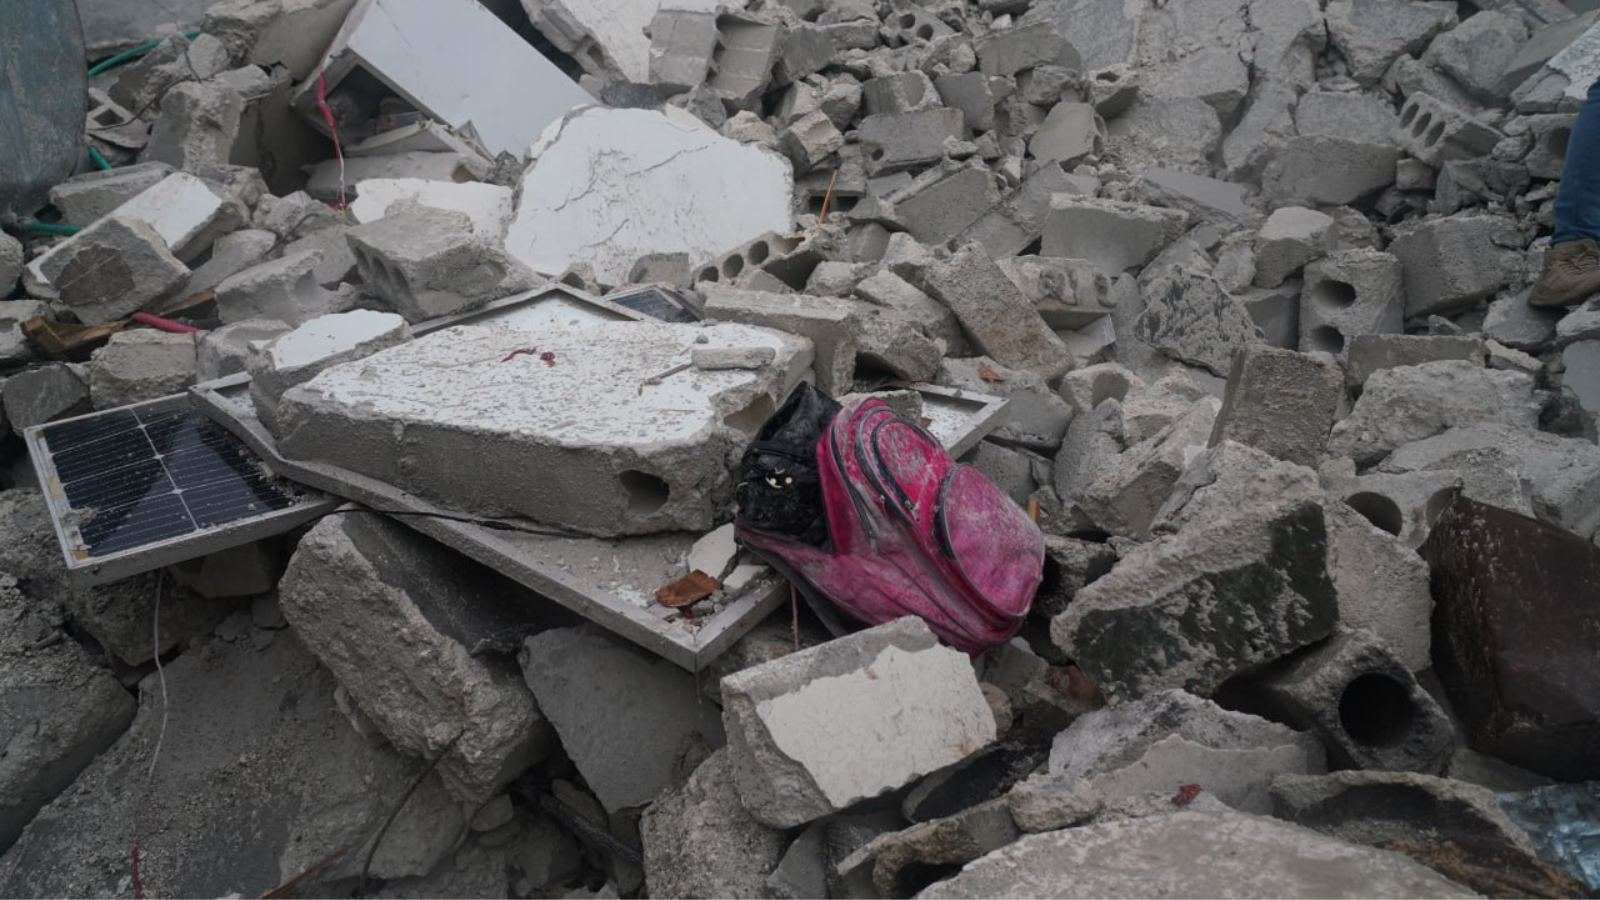 Carrera contra el tiempo para salvar a los niños, niñas y adolescentes sepultados bajo los escombros en Turquía y Siria, tras los devastadores terremotos